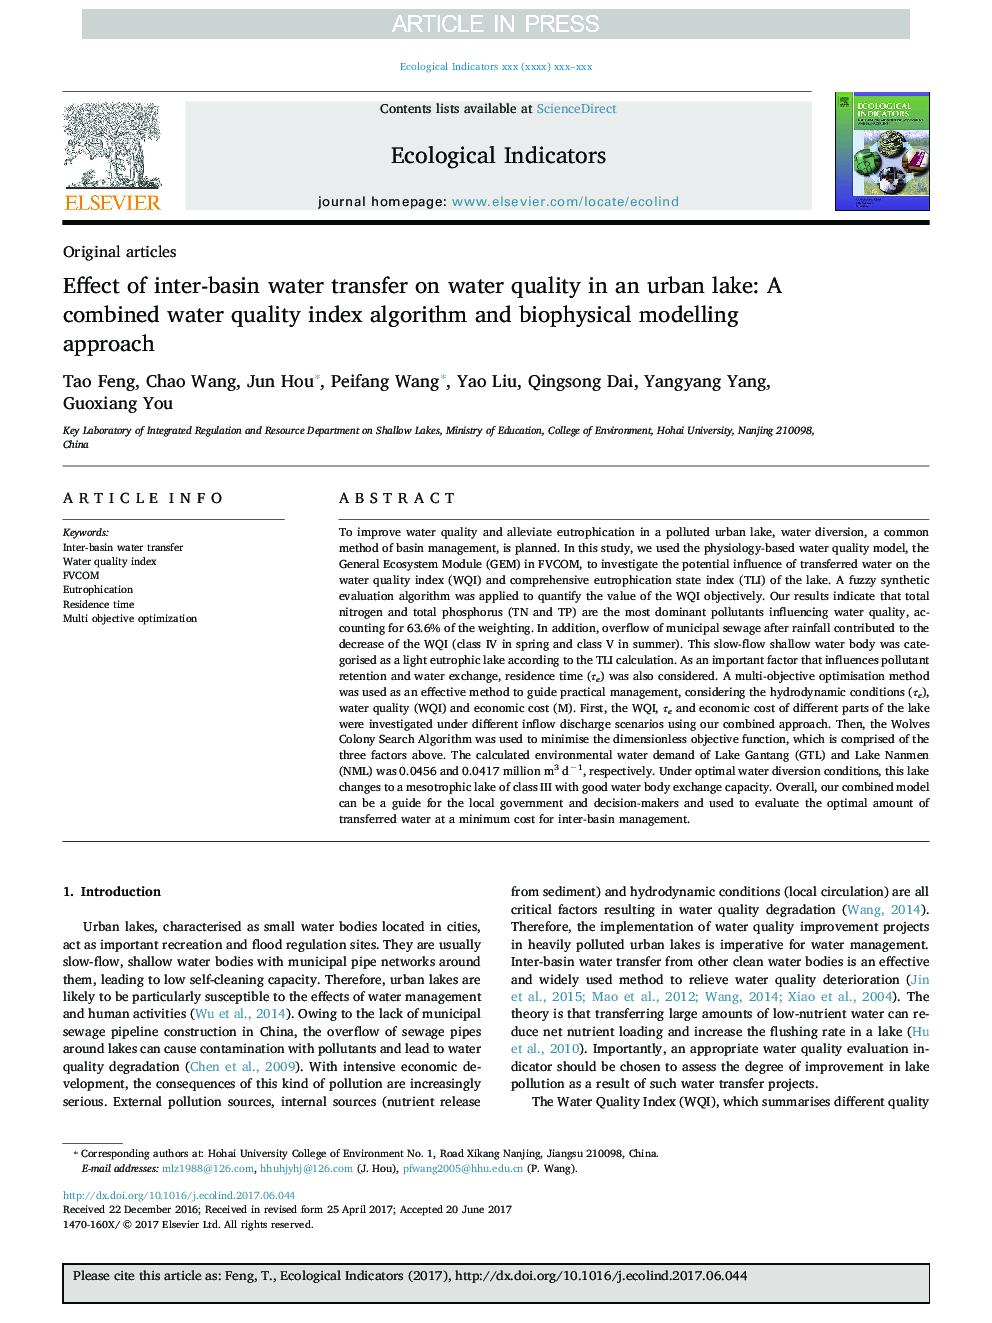 تأثیر انتقال آب بین حوضه بر کیفیت آب دریاچه ی شهری: الگوریتم شاخص کیفیت کابلی و رویکرد مدل سازی بیوفیزیکی 